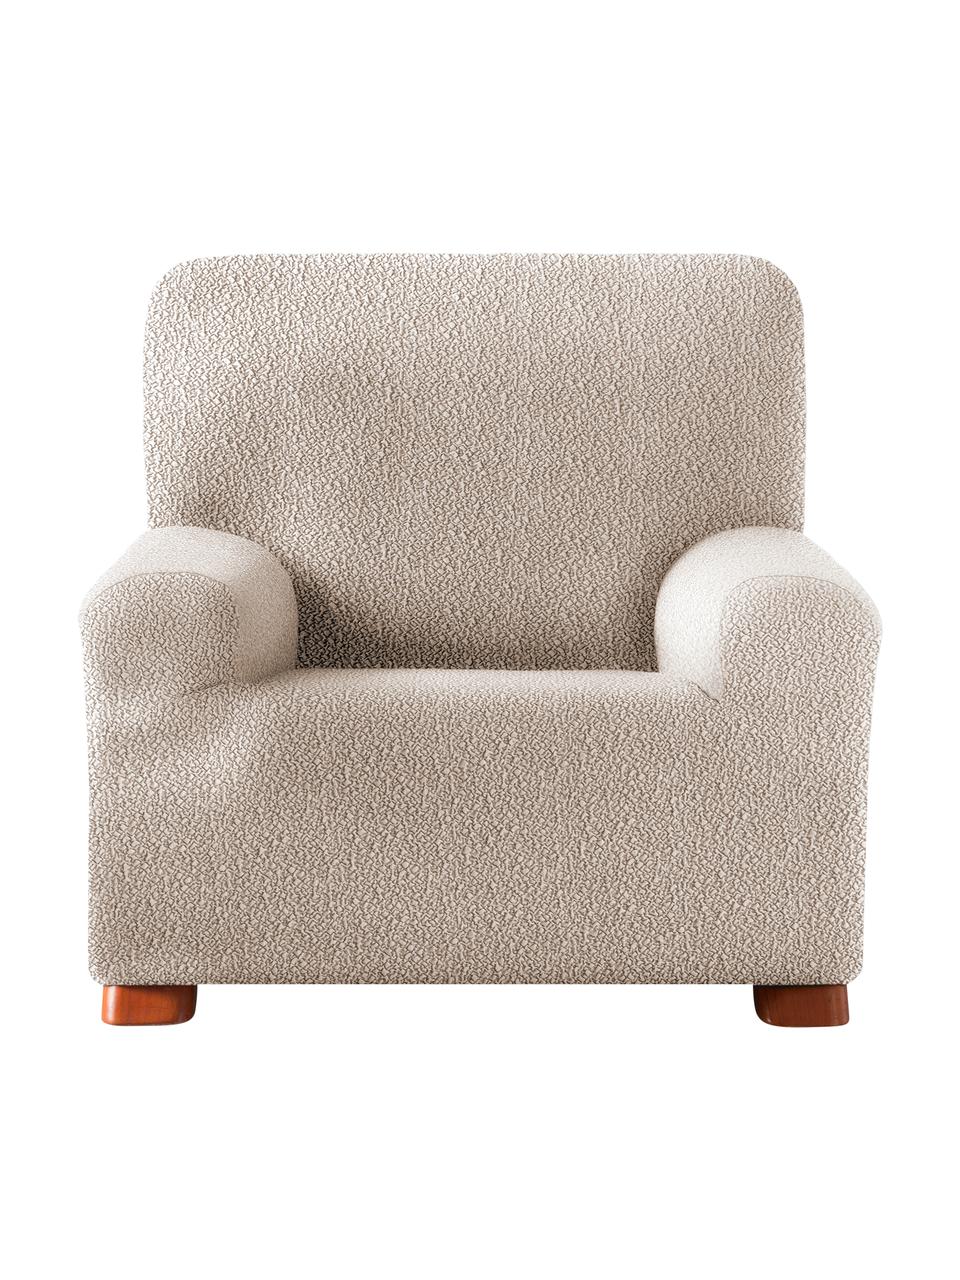 Housse de fauteuil Roc, 55 % polyester, 35 % coton, 10 % élastomère, Couleur crème, larg. 130 x haut. 120 cm